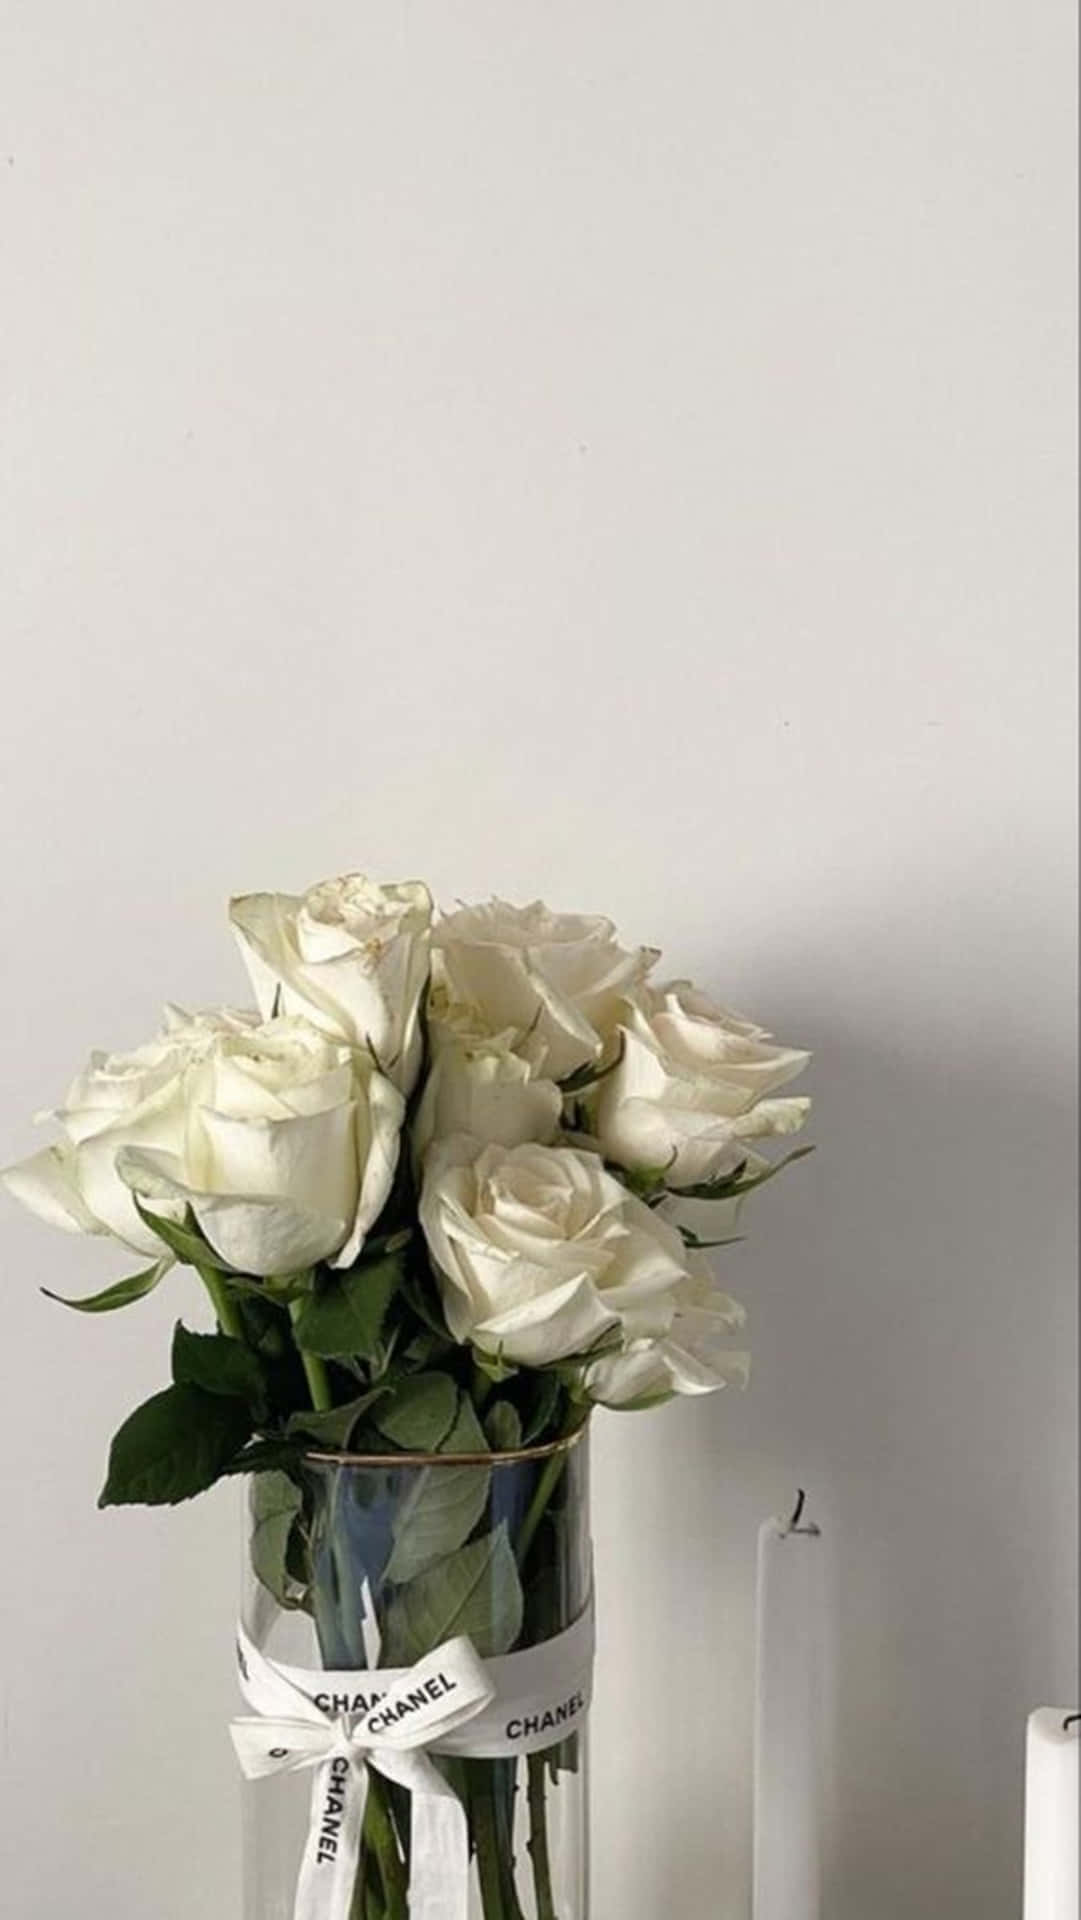 Vitarosor Estetisk Chanel Vas. Wallpaper